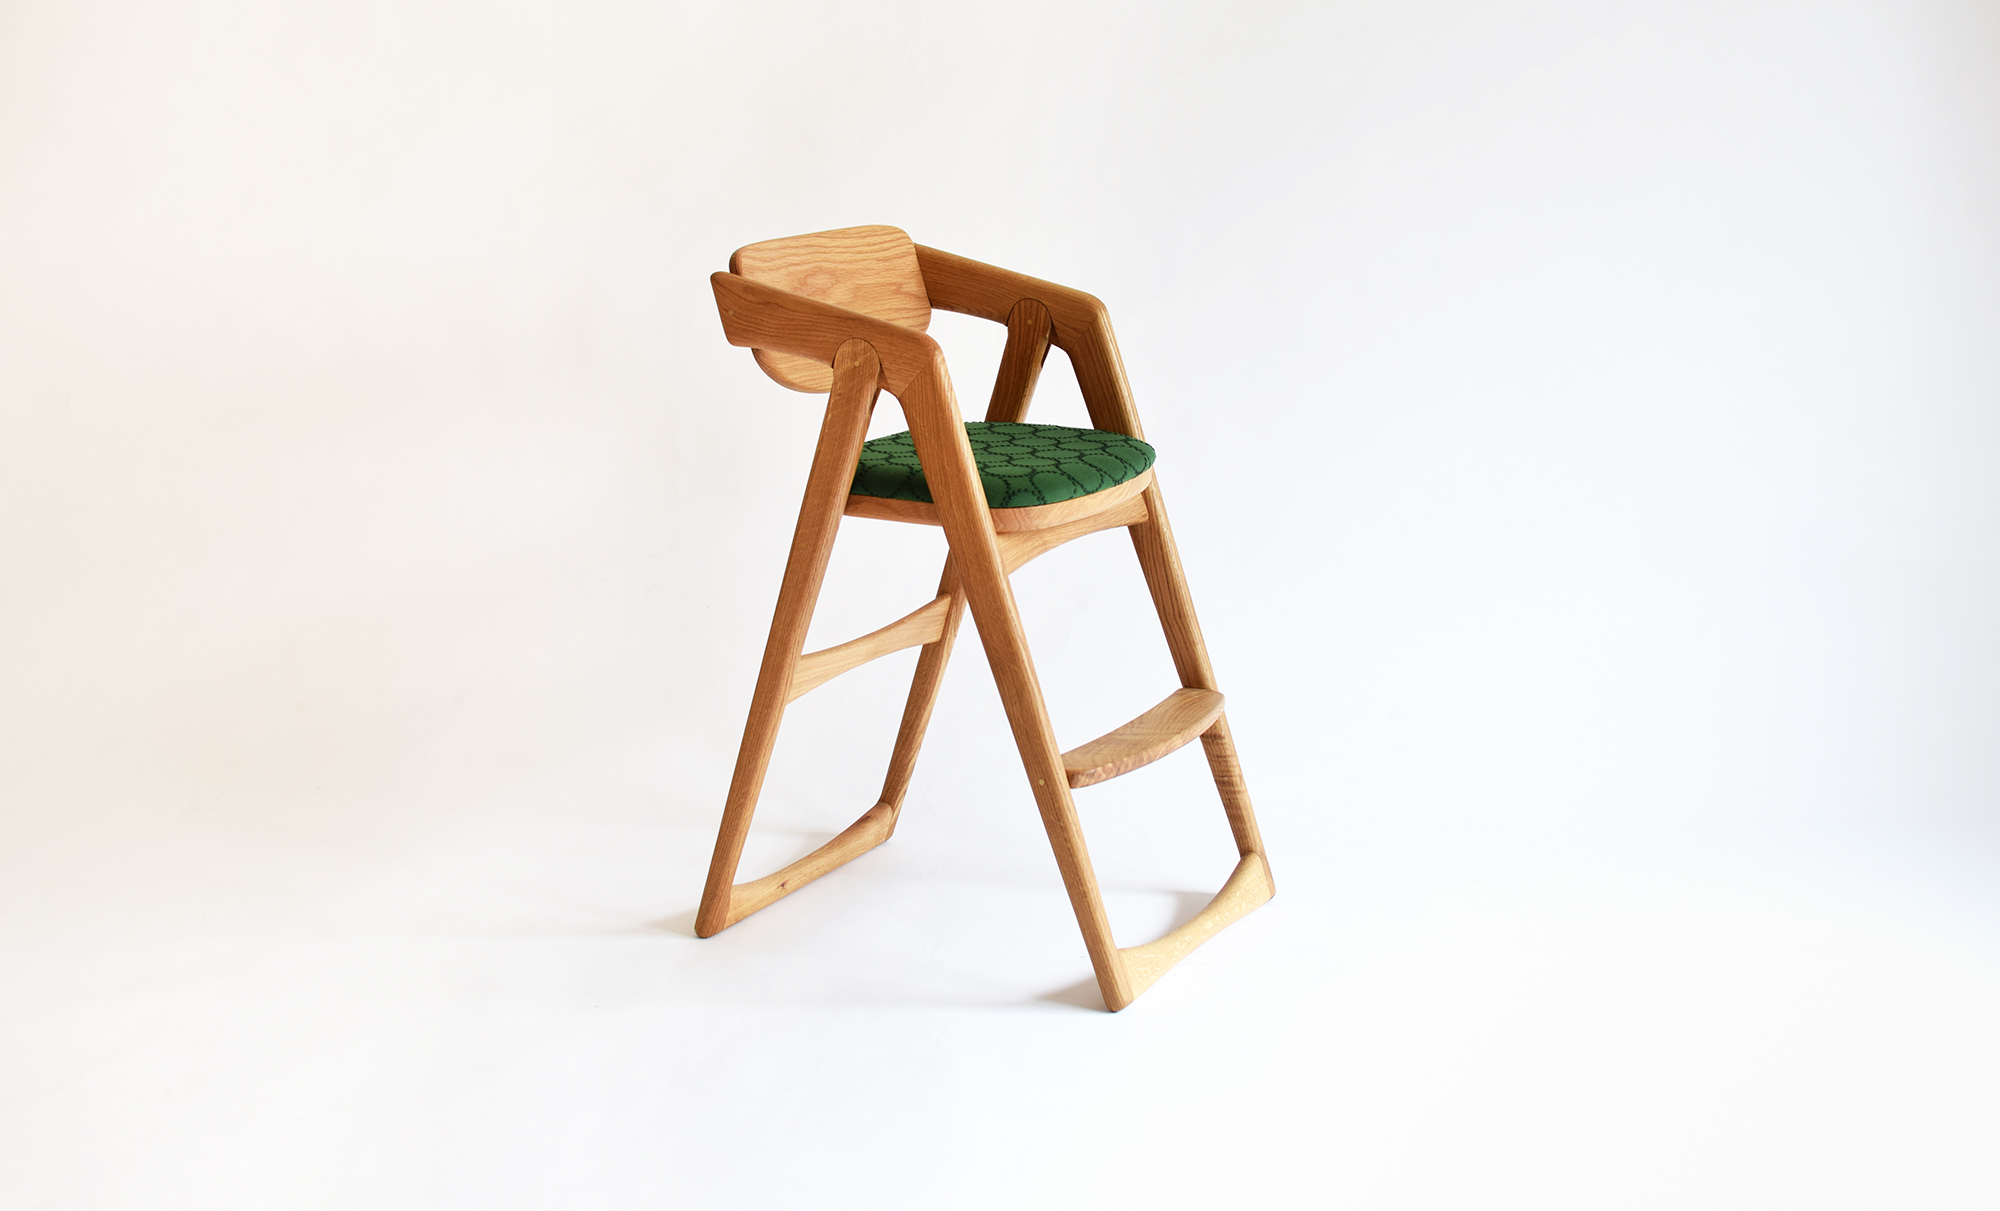 A kids chair